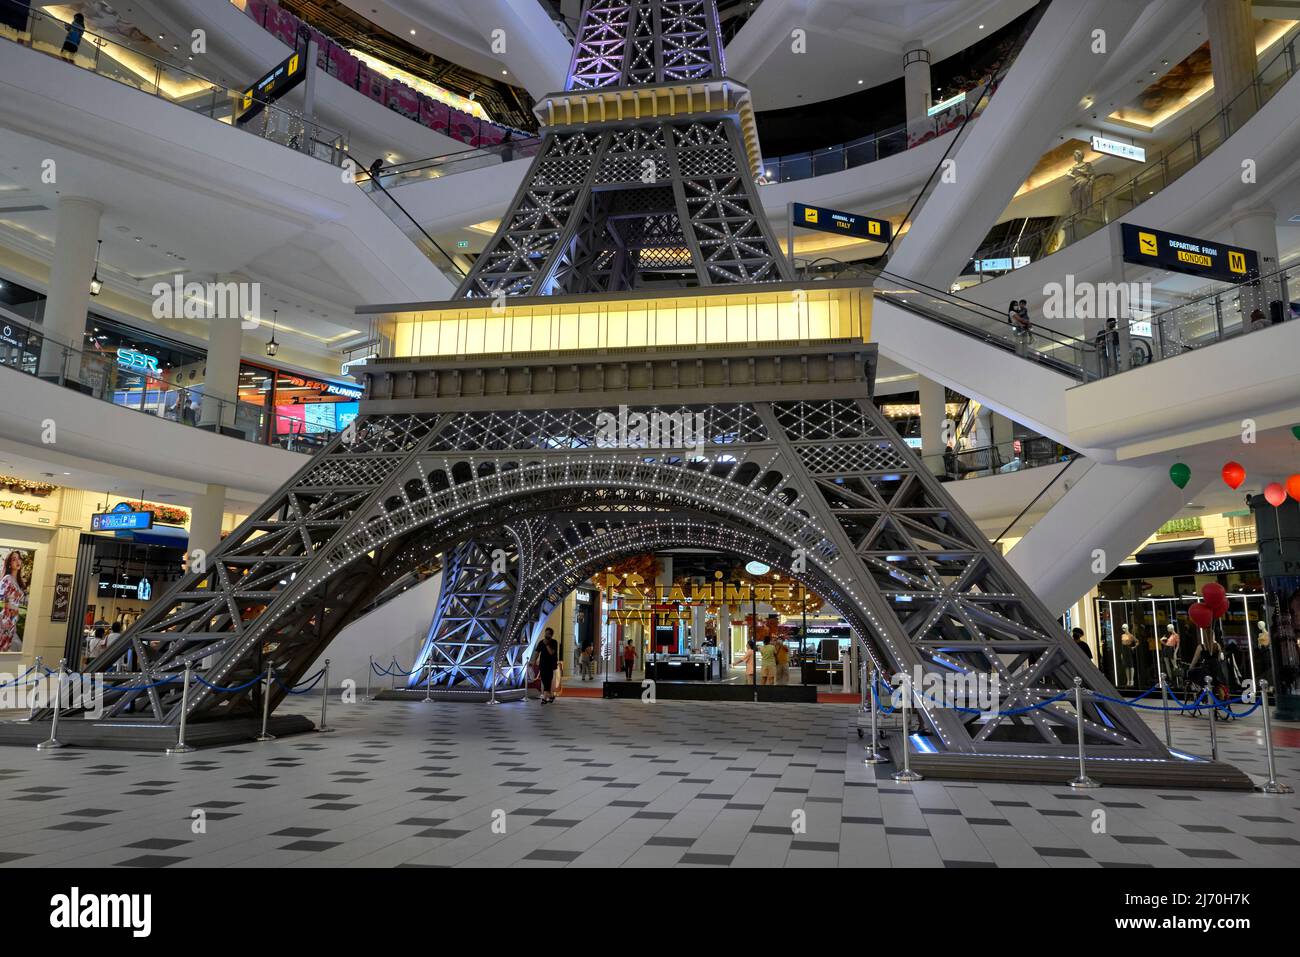 Centro comercial de arquitectura interior. Réplica de la torre Eiffel en el centro comercial temático Terminal 21, Pattaya, Tailandia, Asia Foto de stock